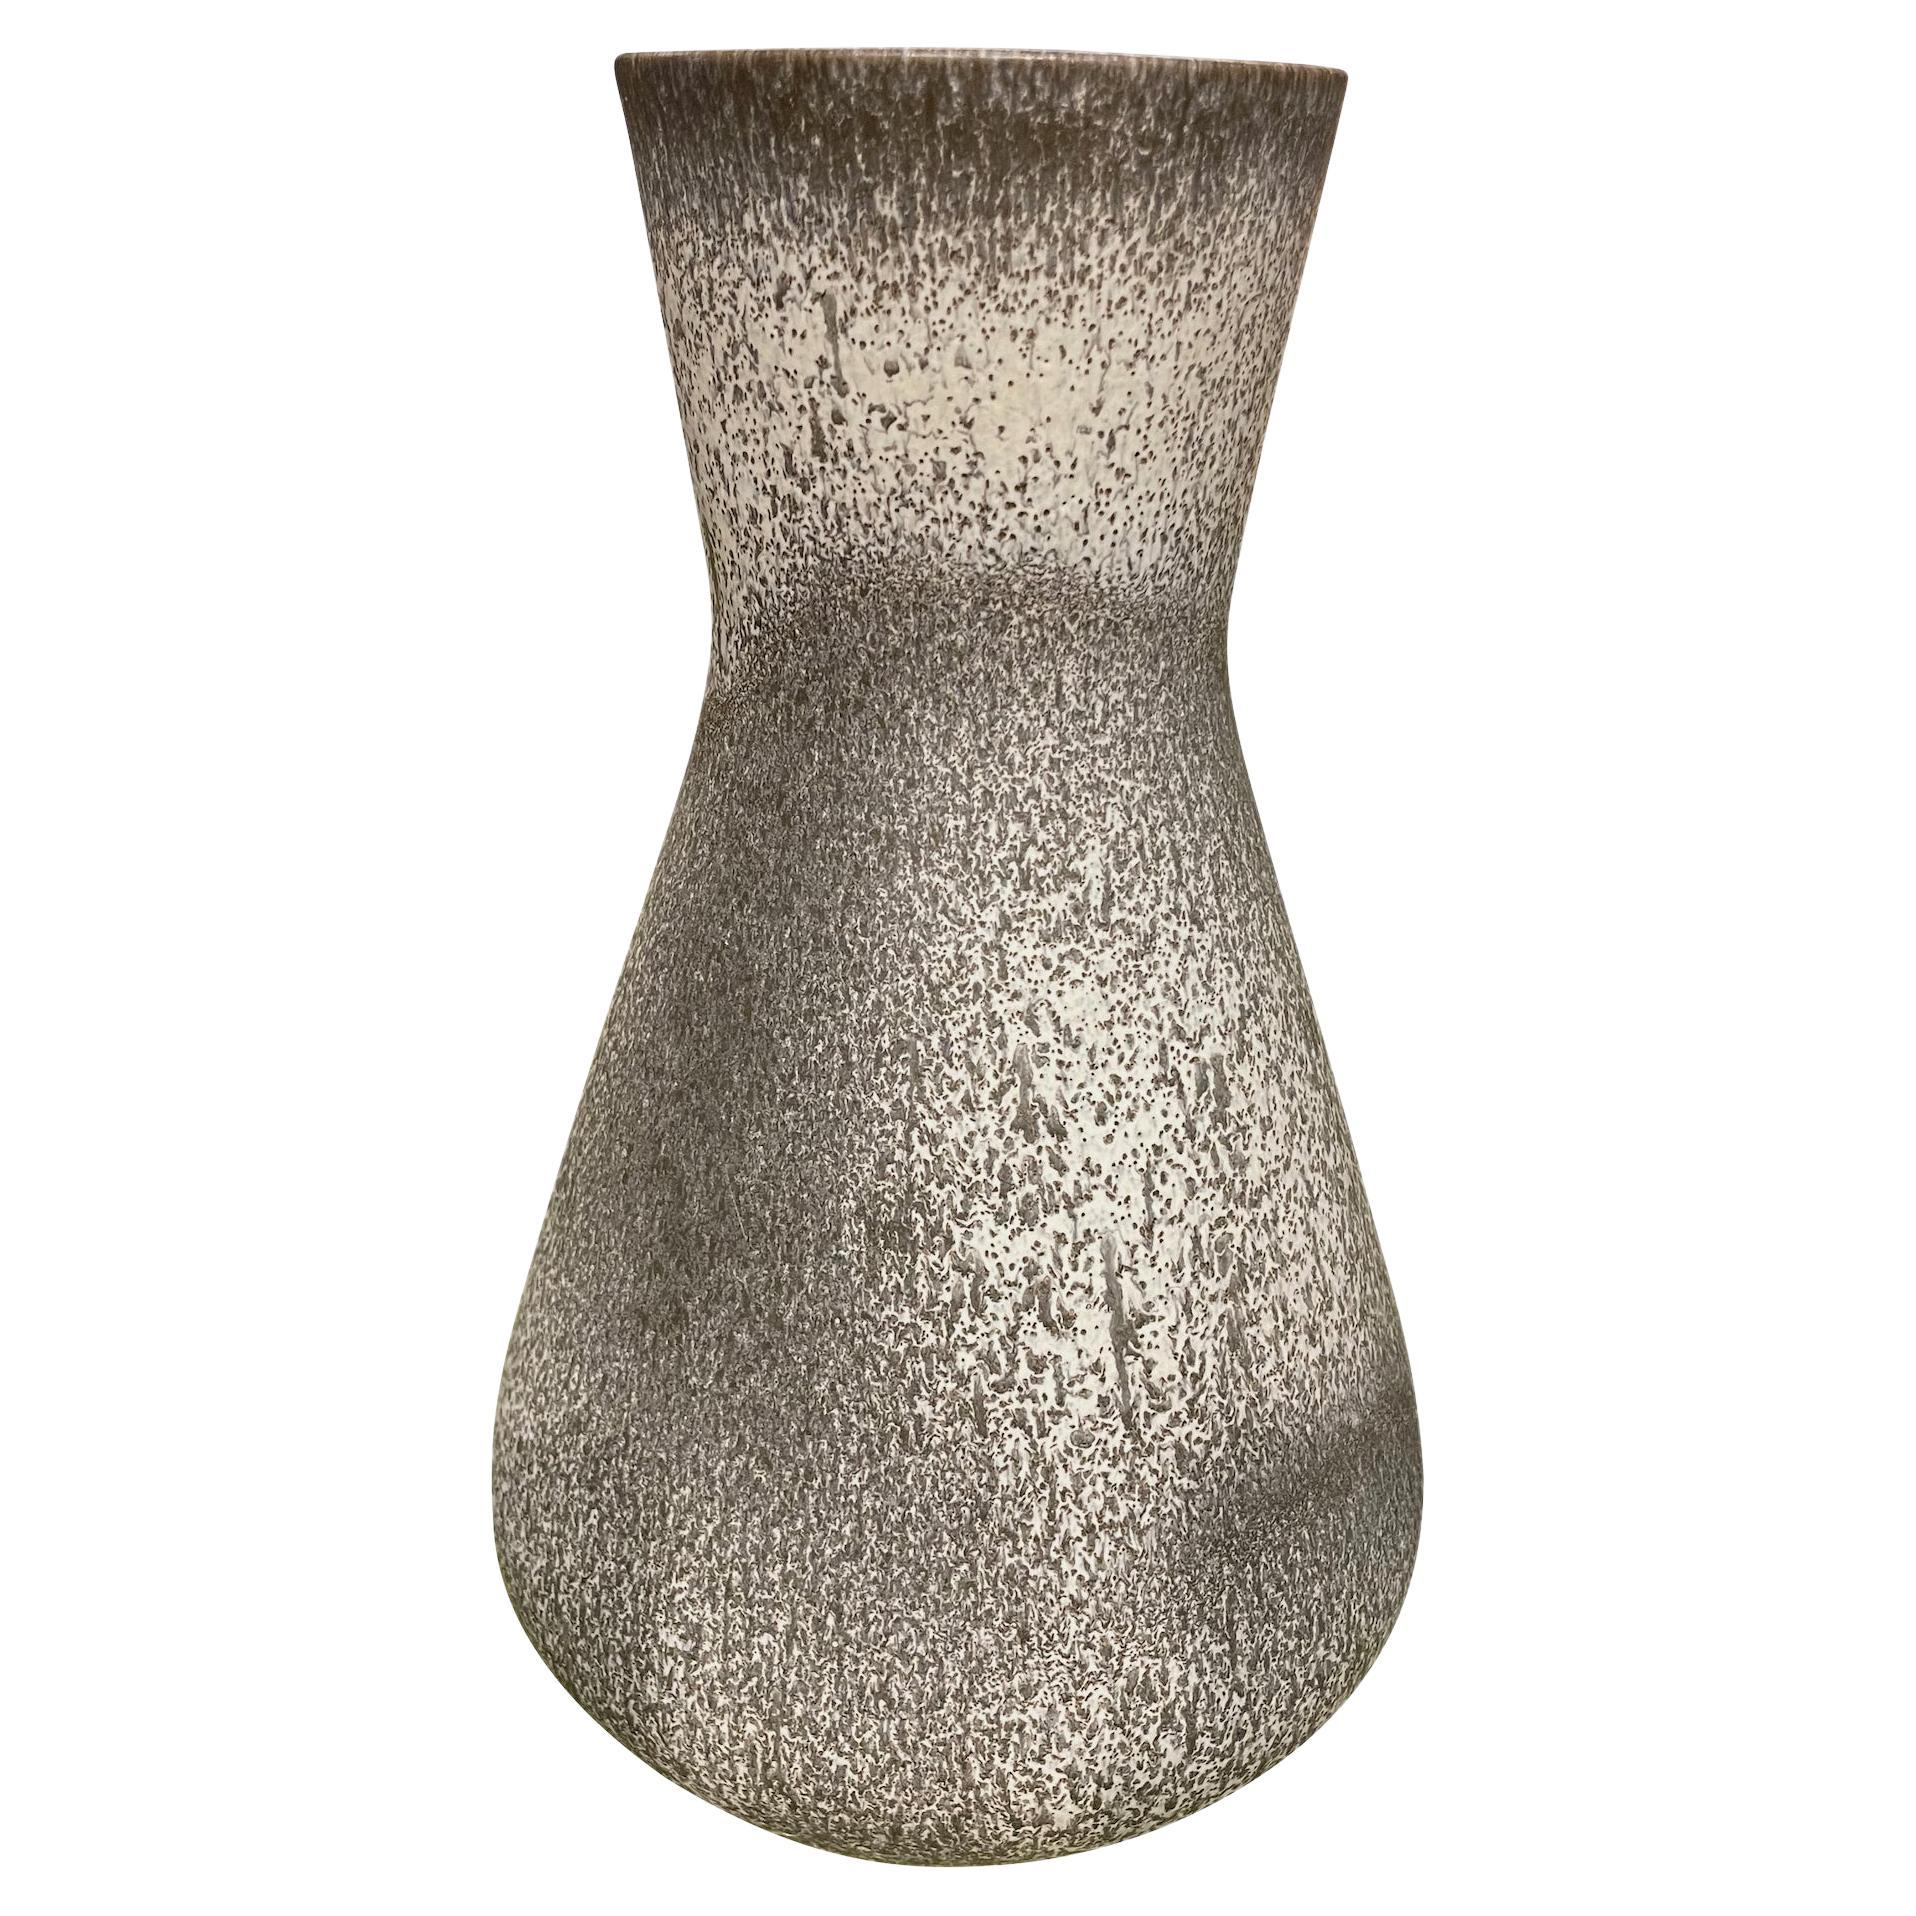 Vase italien du milieu du siècle à glaçure tachetée grise.
Forme de sablier.
